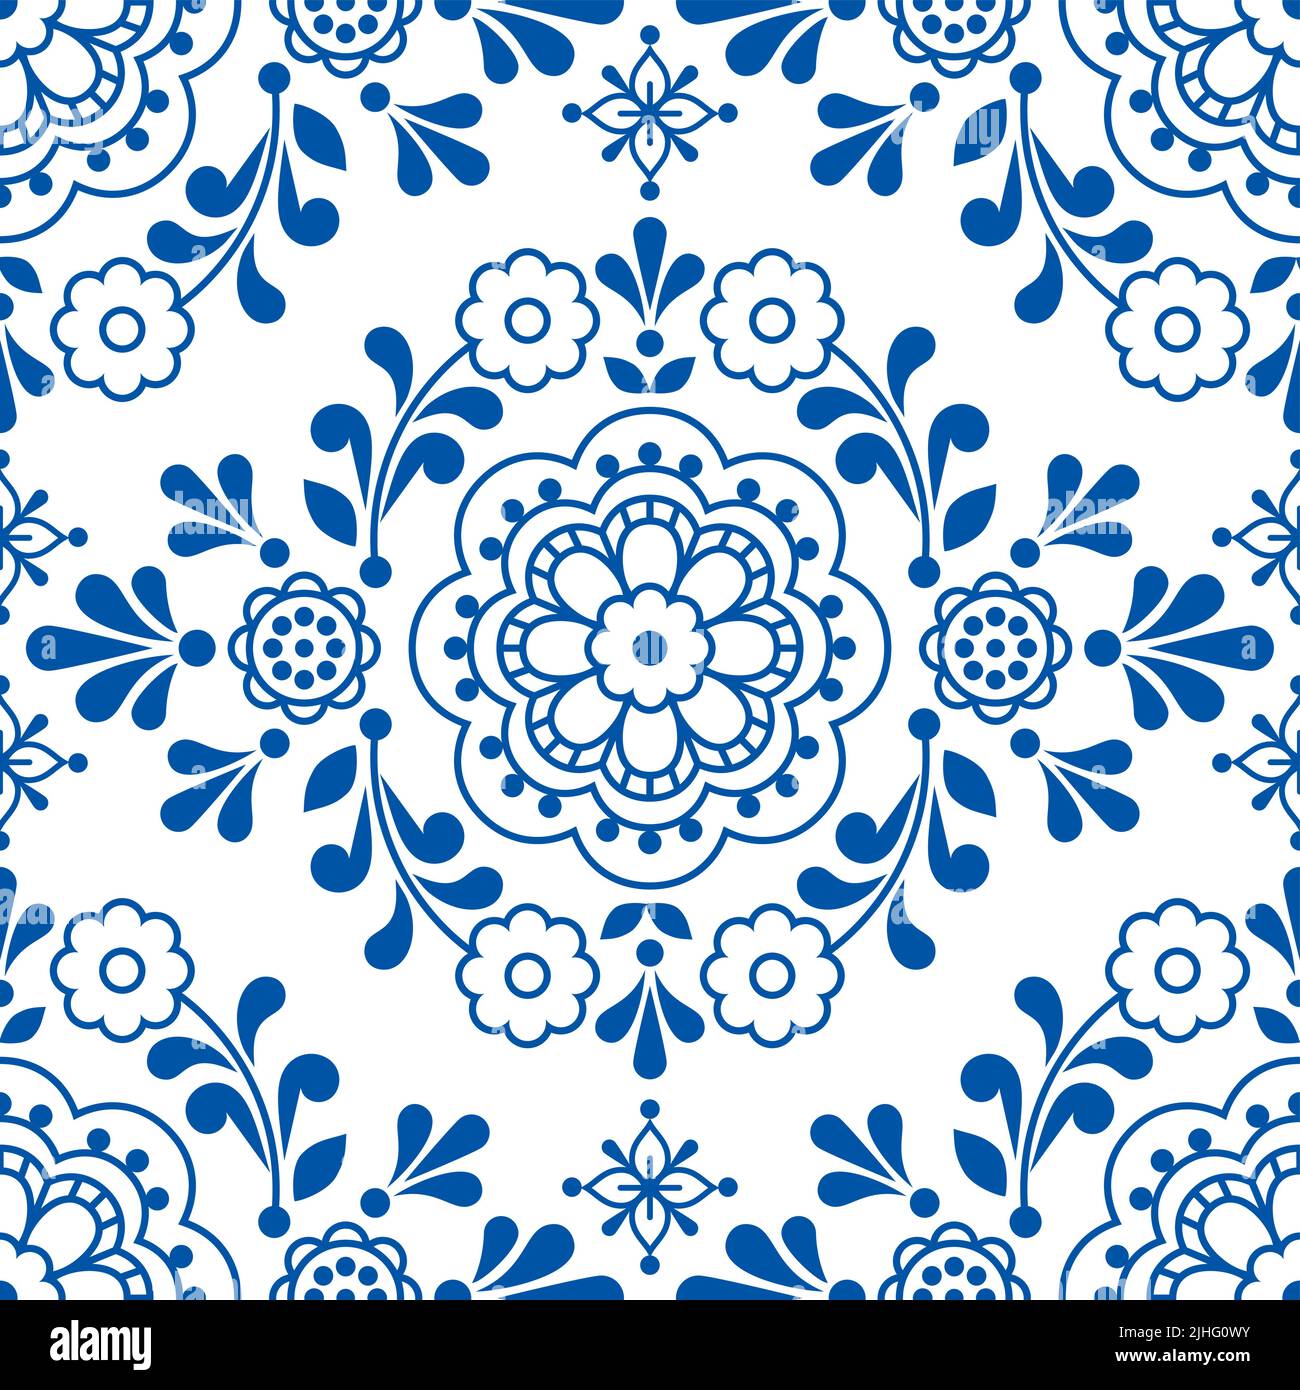 Skandinavische florale Volkskunst Vektor nahtloses Muster, niedliches ornamentales Design perfekt für Textil- oder Stoffdruck Stock Vektor